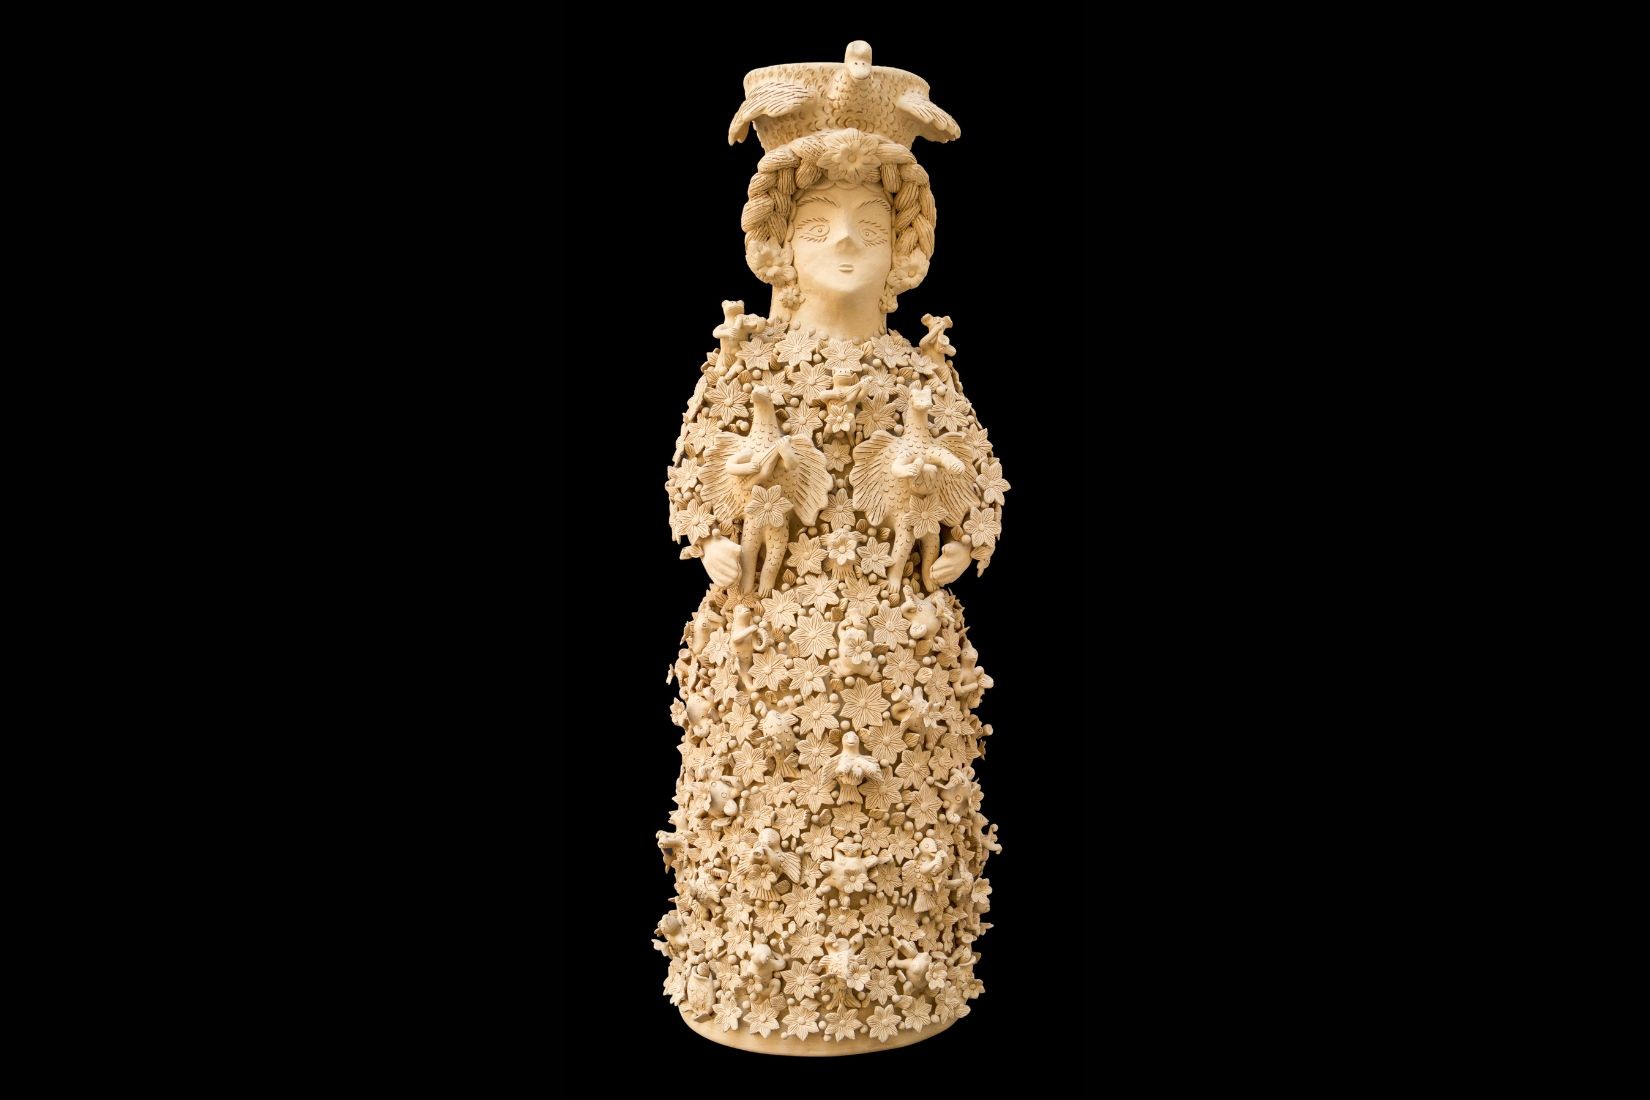 Muñeca de barro modelado decorado al pastillaje. Artesana Irma García Blanco. Sta. María Atzompa, Oax.